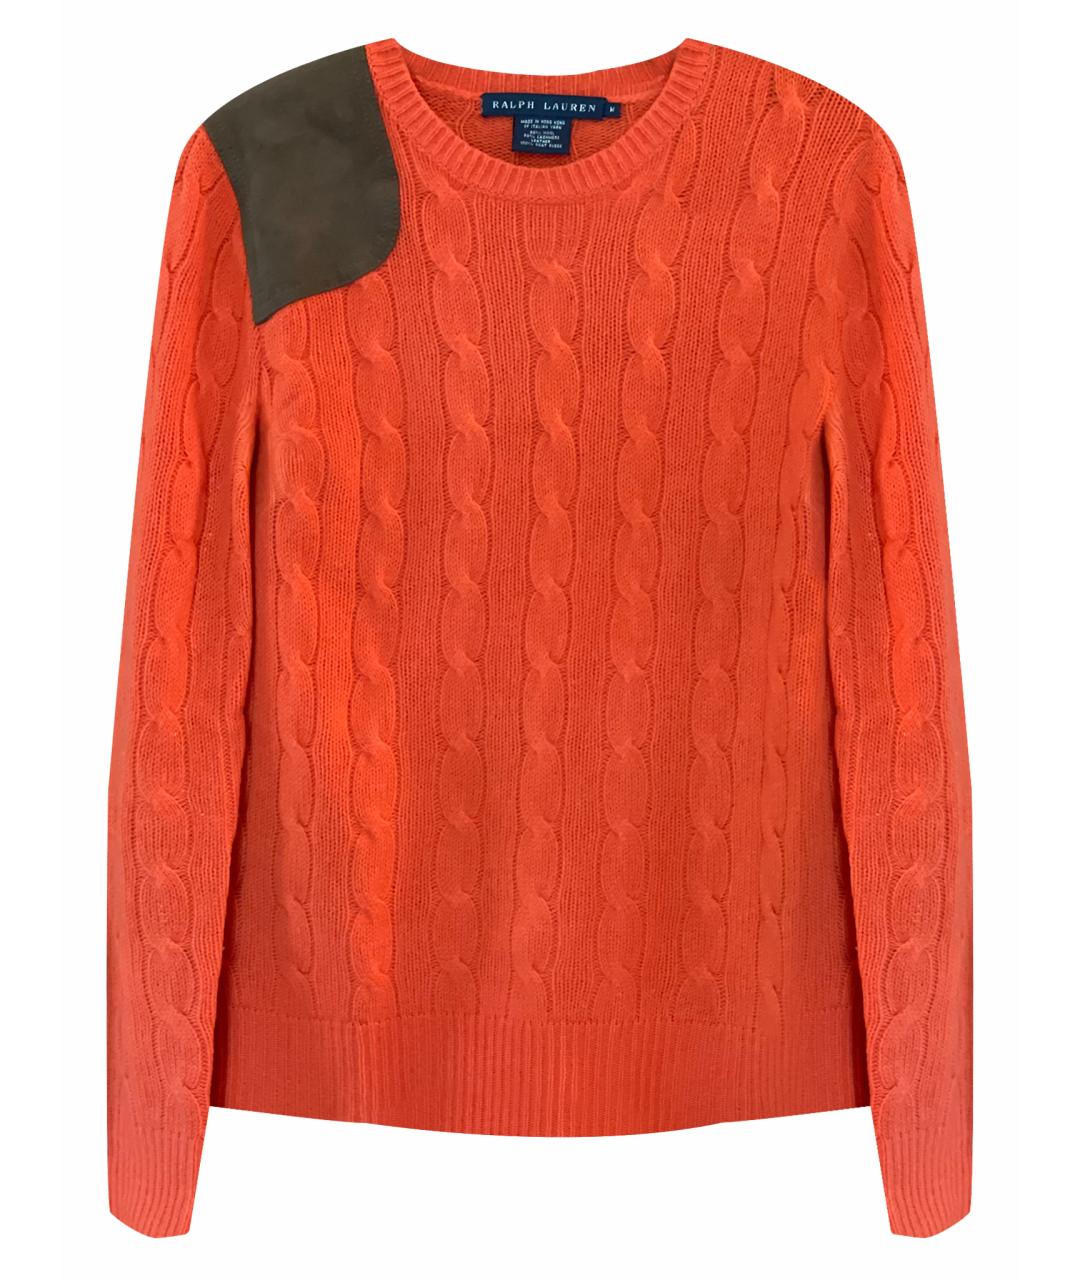 RALPH LAUREN Оранжевый шерстяной джемпер / свитер, фото 1